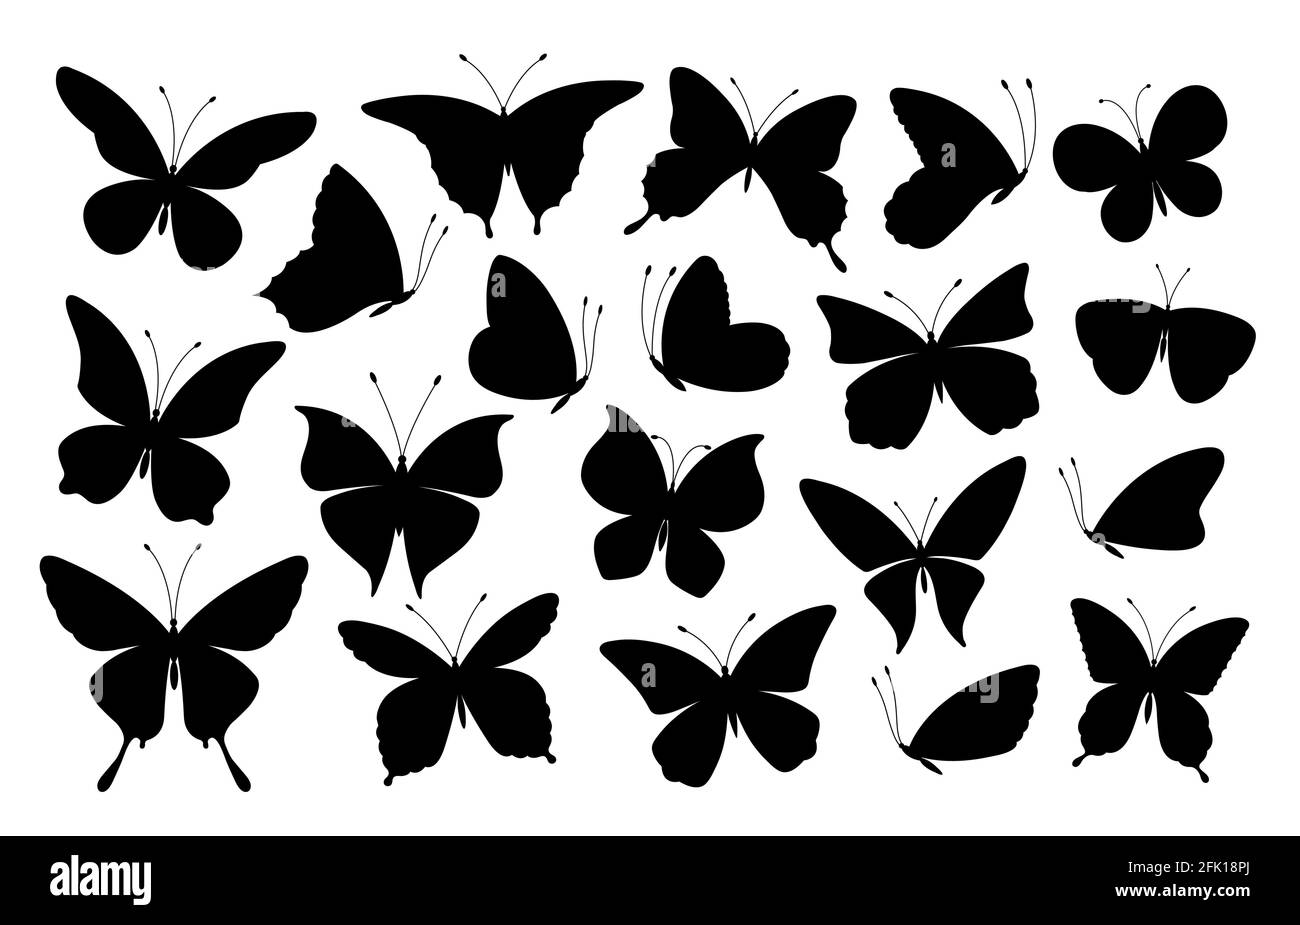 Silhouettes papillons noires. Icônes de papillons, insectes volants. Collection de vecteurs d'éléments de tatouage et de symboles de ressort d'art abstrait isolés Illustration de Vecteur